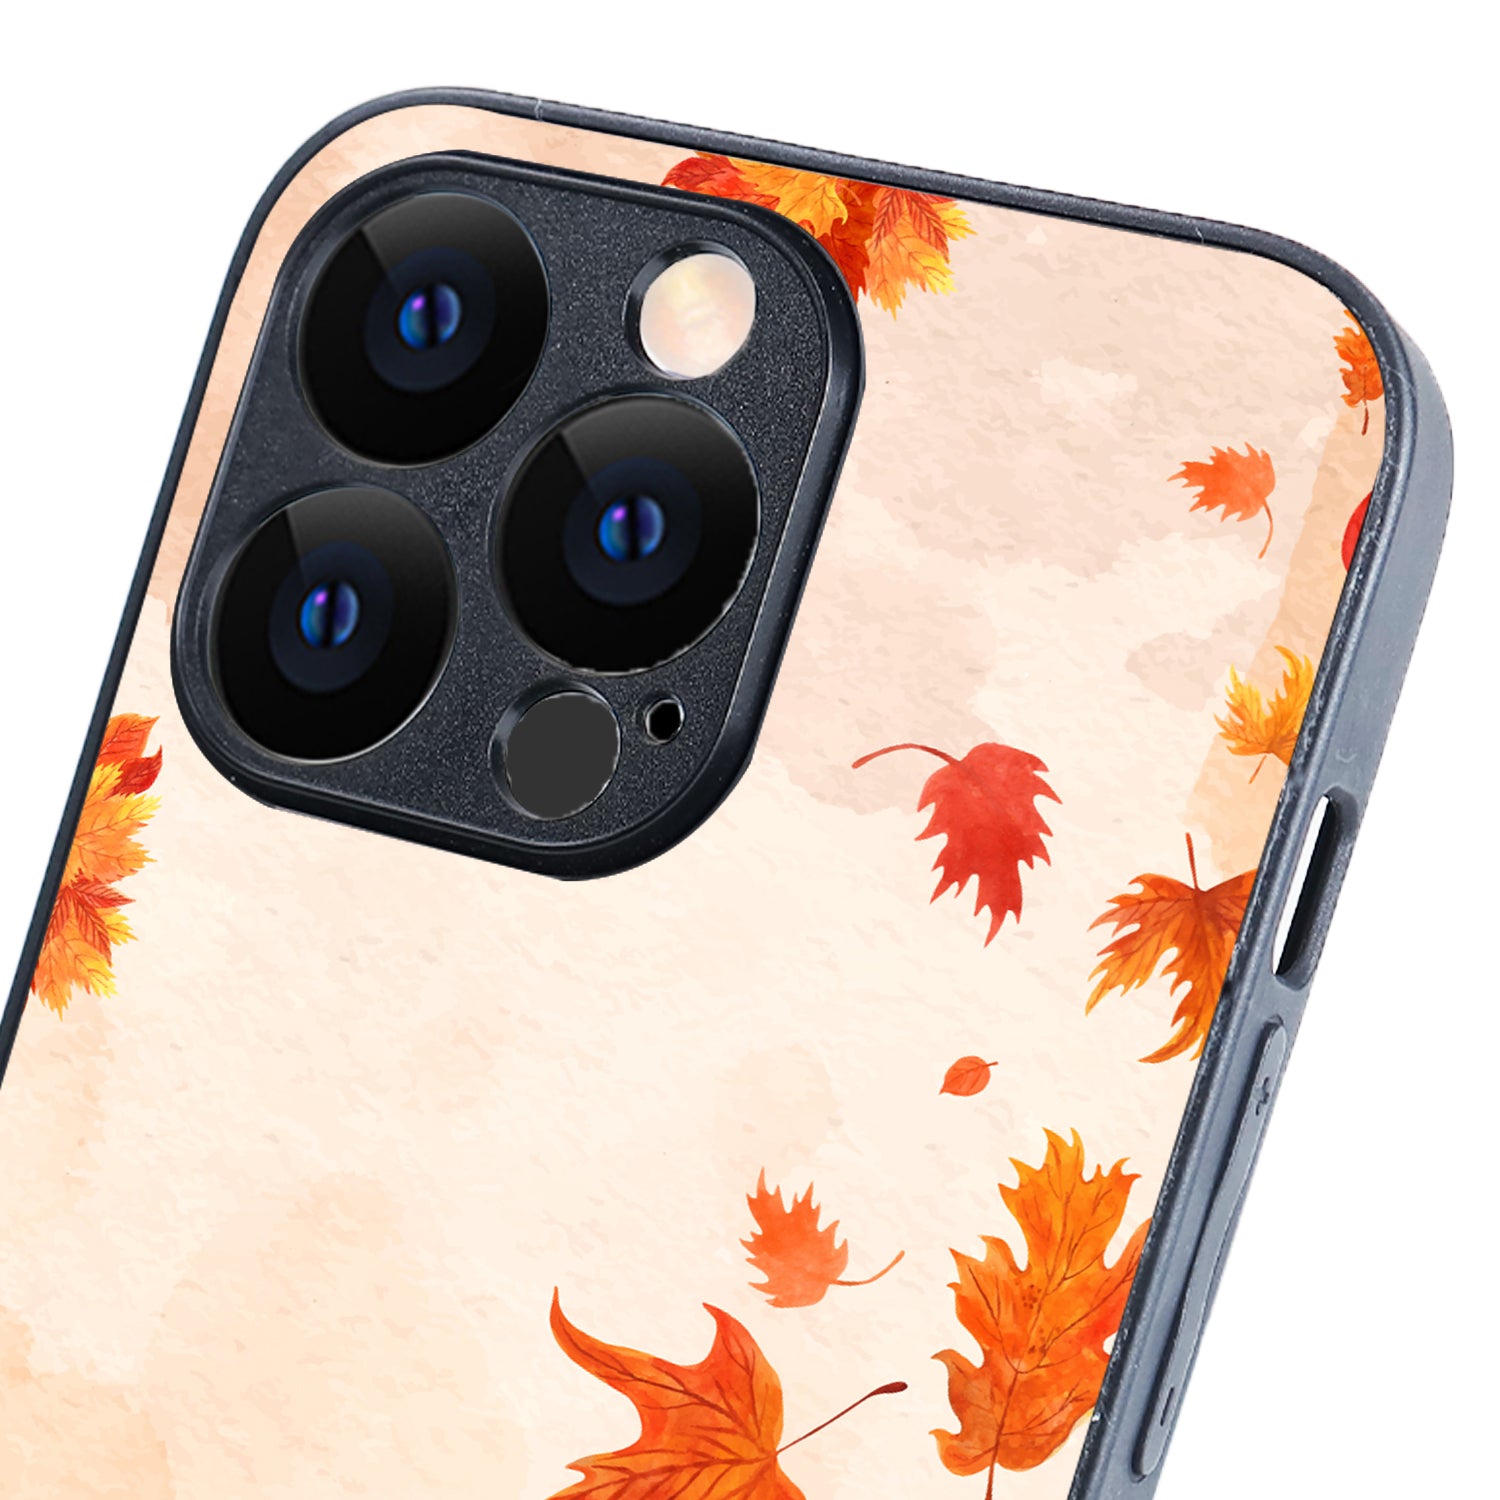 Leaves Fall Autumn Fauna iPhone 13 Pro Case